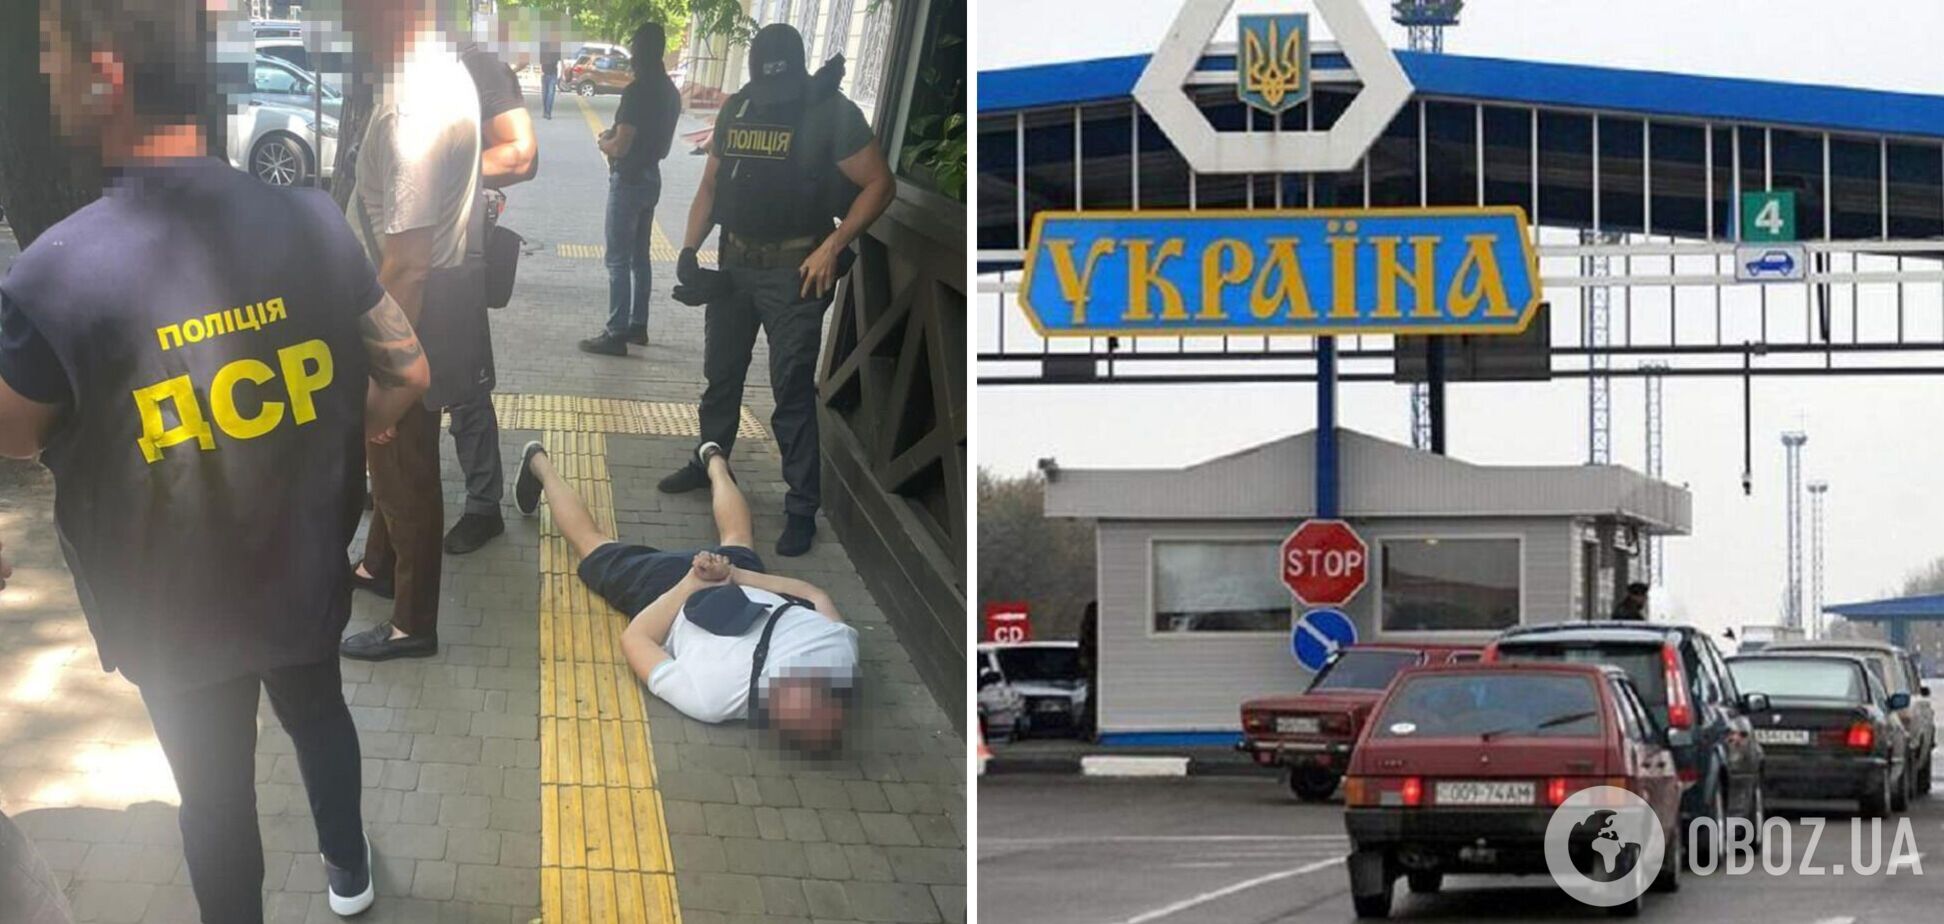 В Одесі викрили громадян, які за гроші допомагали 'уклоністам' втекти з України